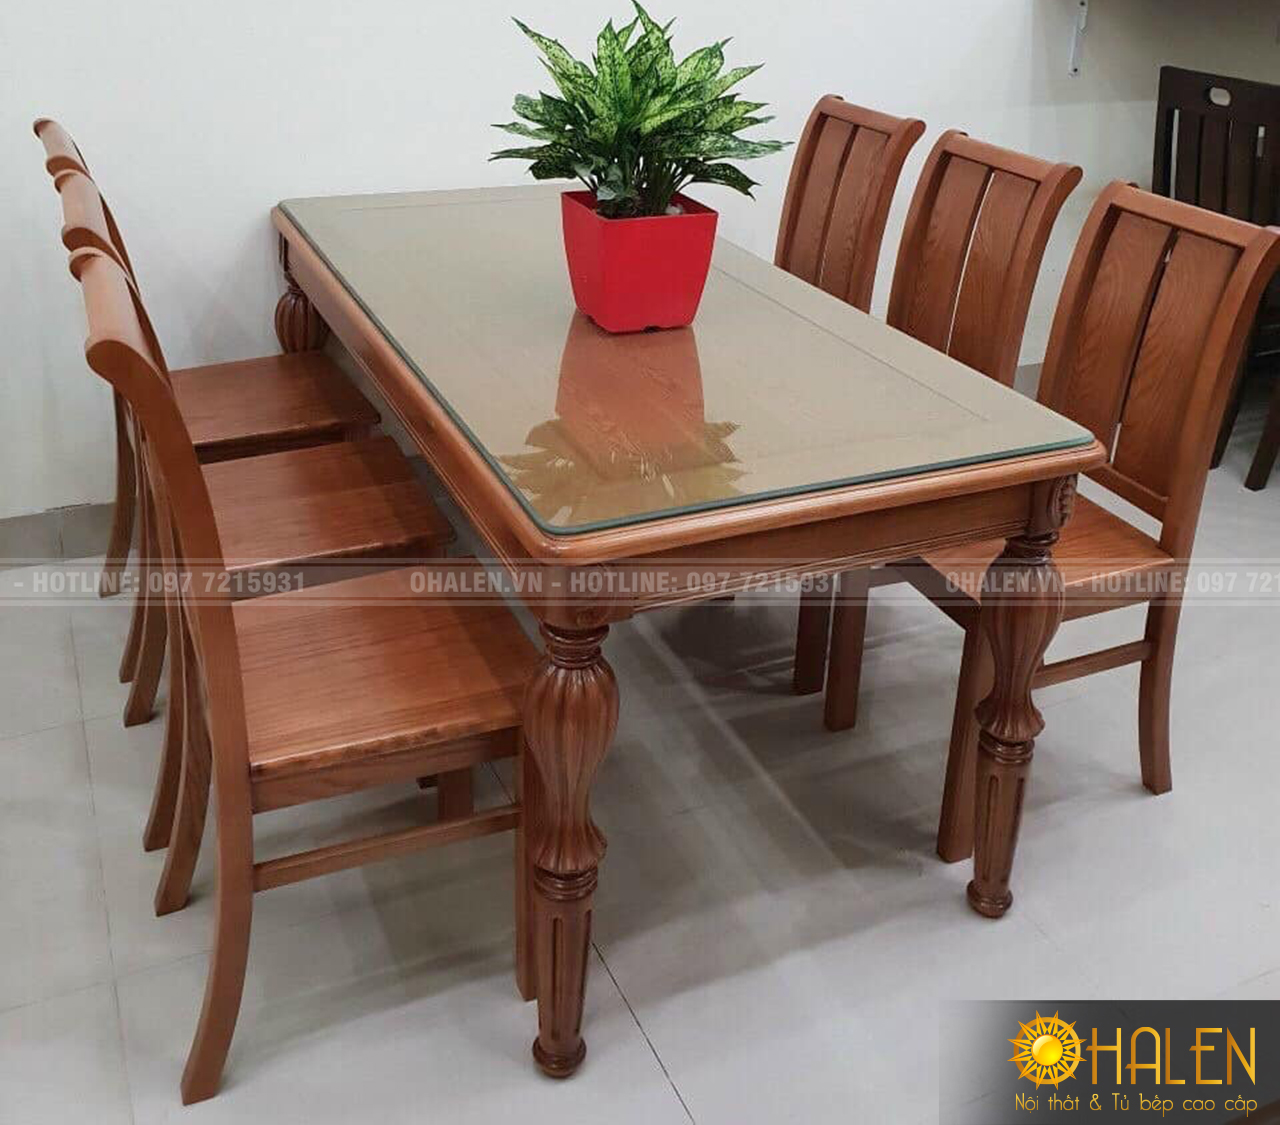 Mẫu bàn ăn gỗ Xoan Đào dành cho các gia chủ tham khảo - nội thất OHALEN